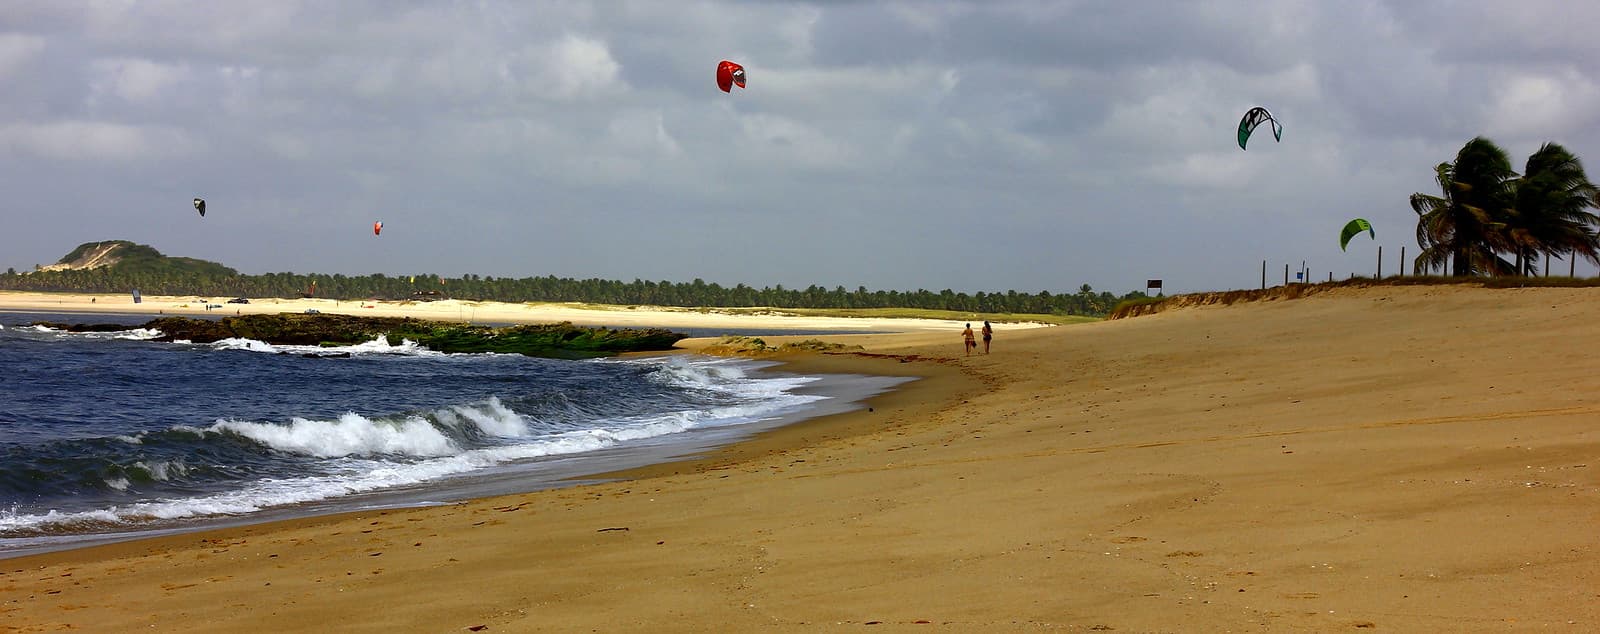 Praia da Barra de Cunhaú